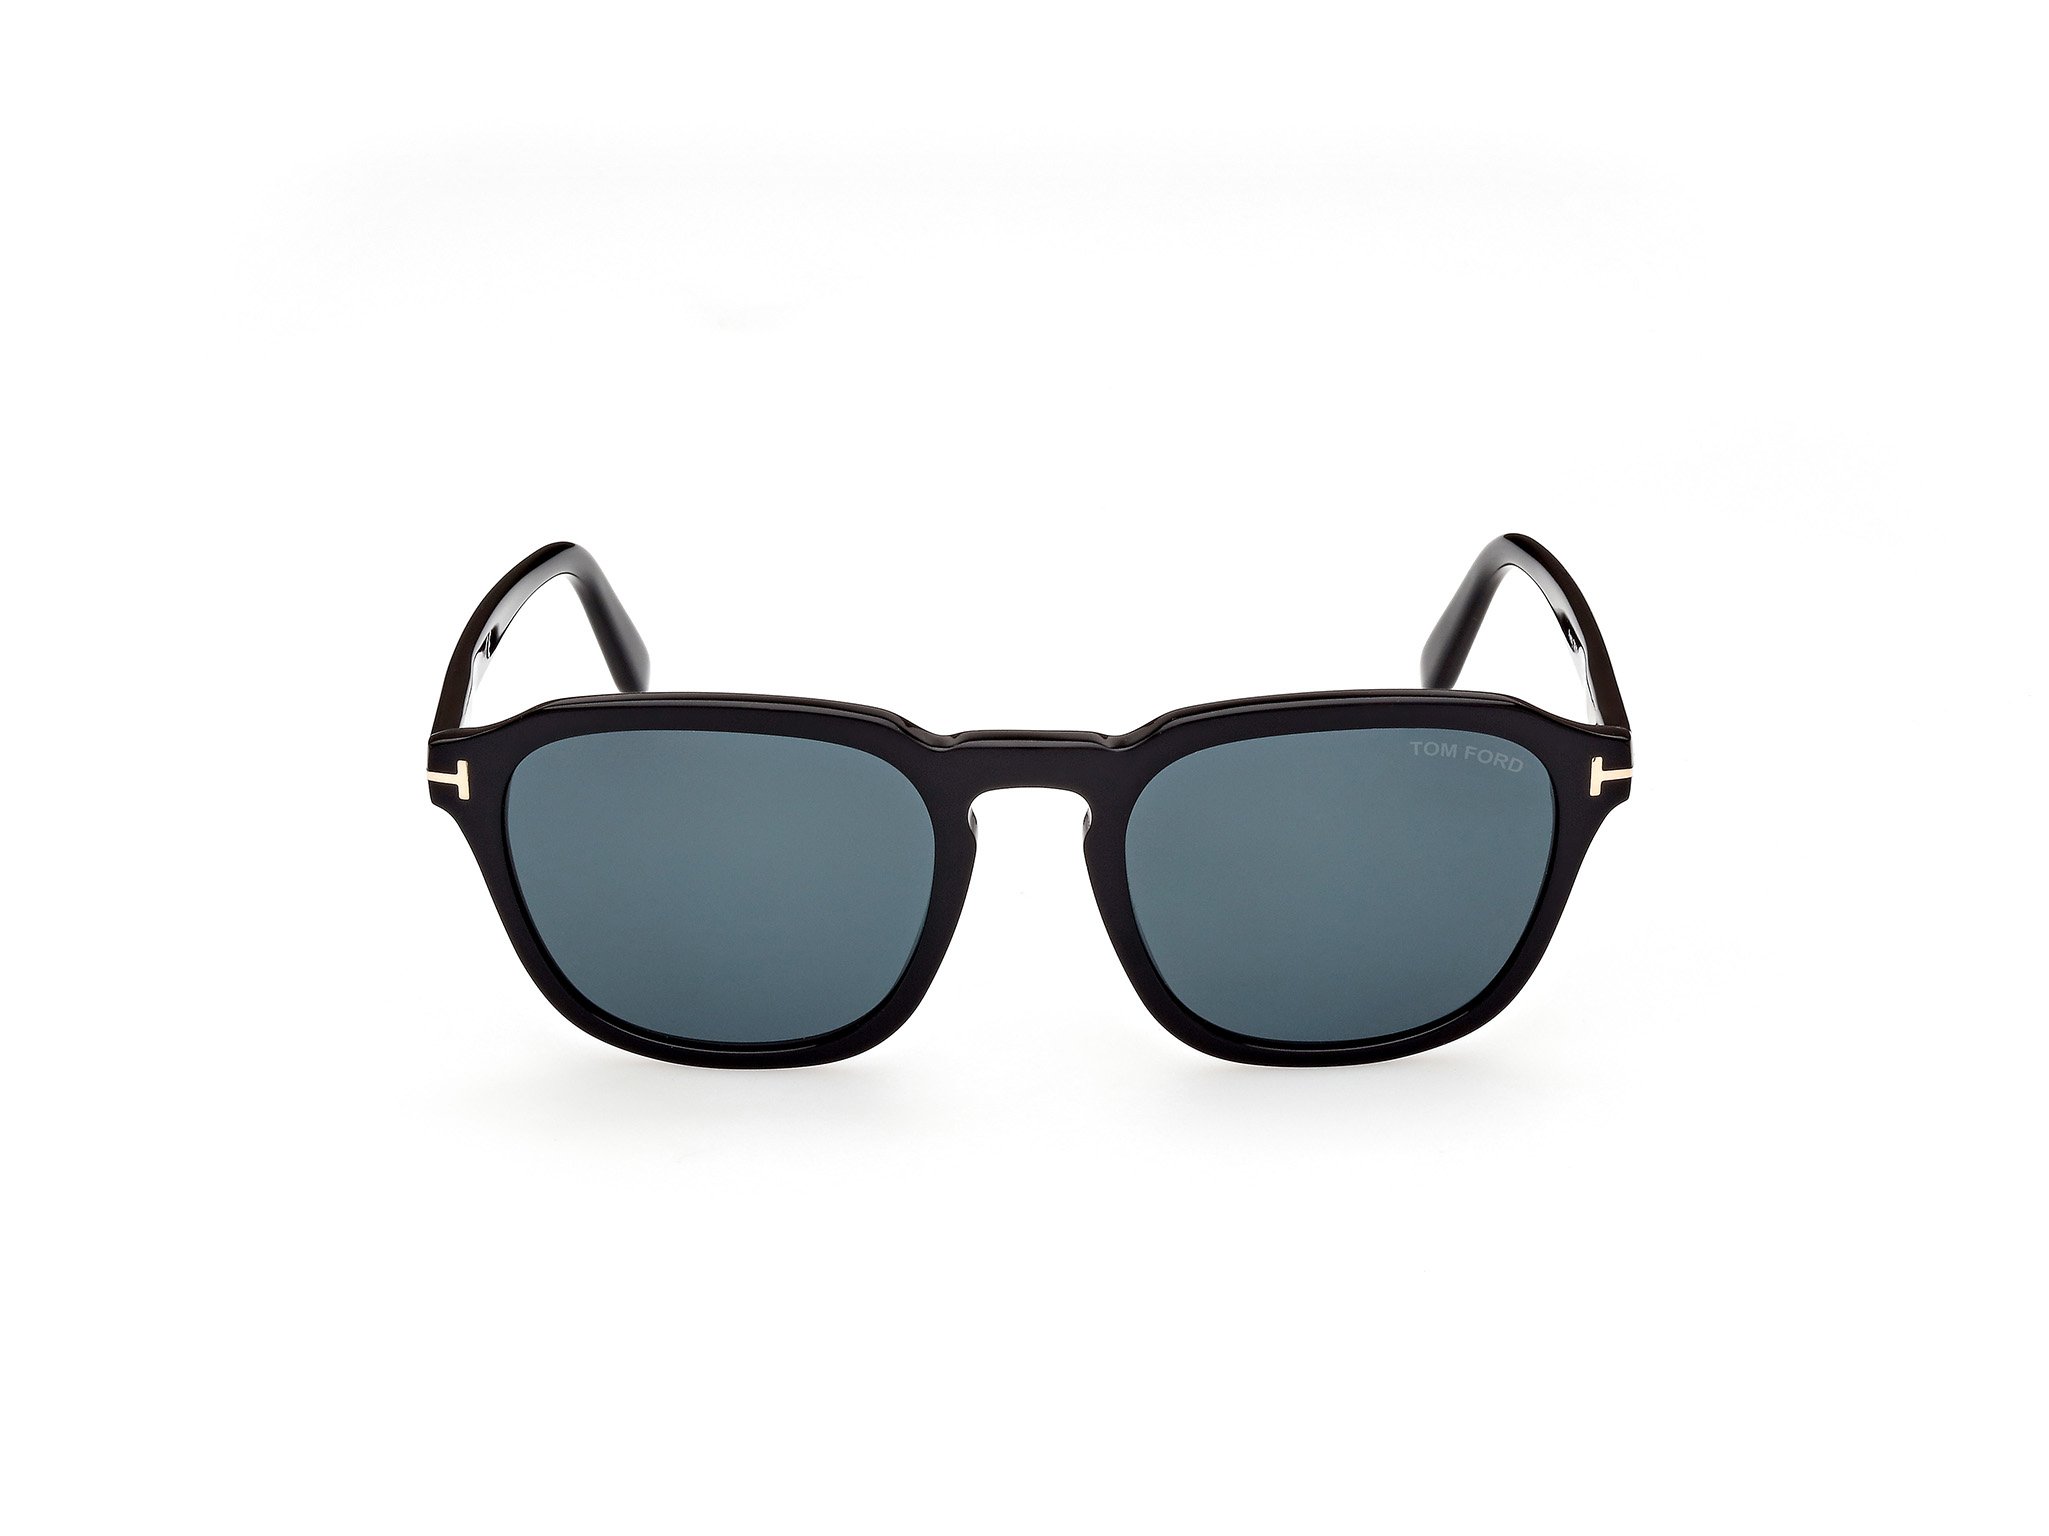 Das Bild zeigt die Sonnenbrille FT0931 der Marke Tom Ford in schwarz von vorne.